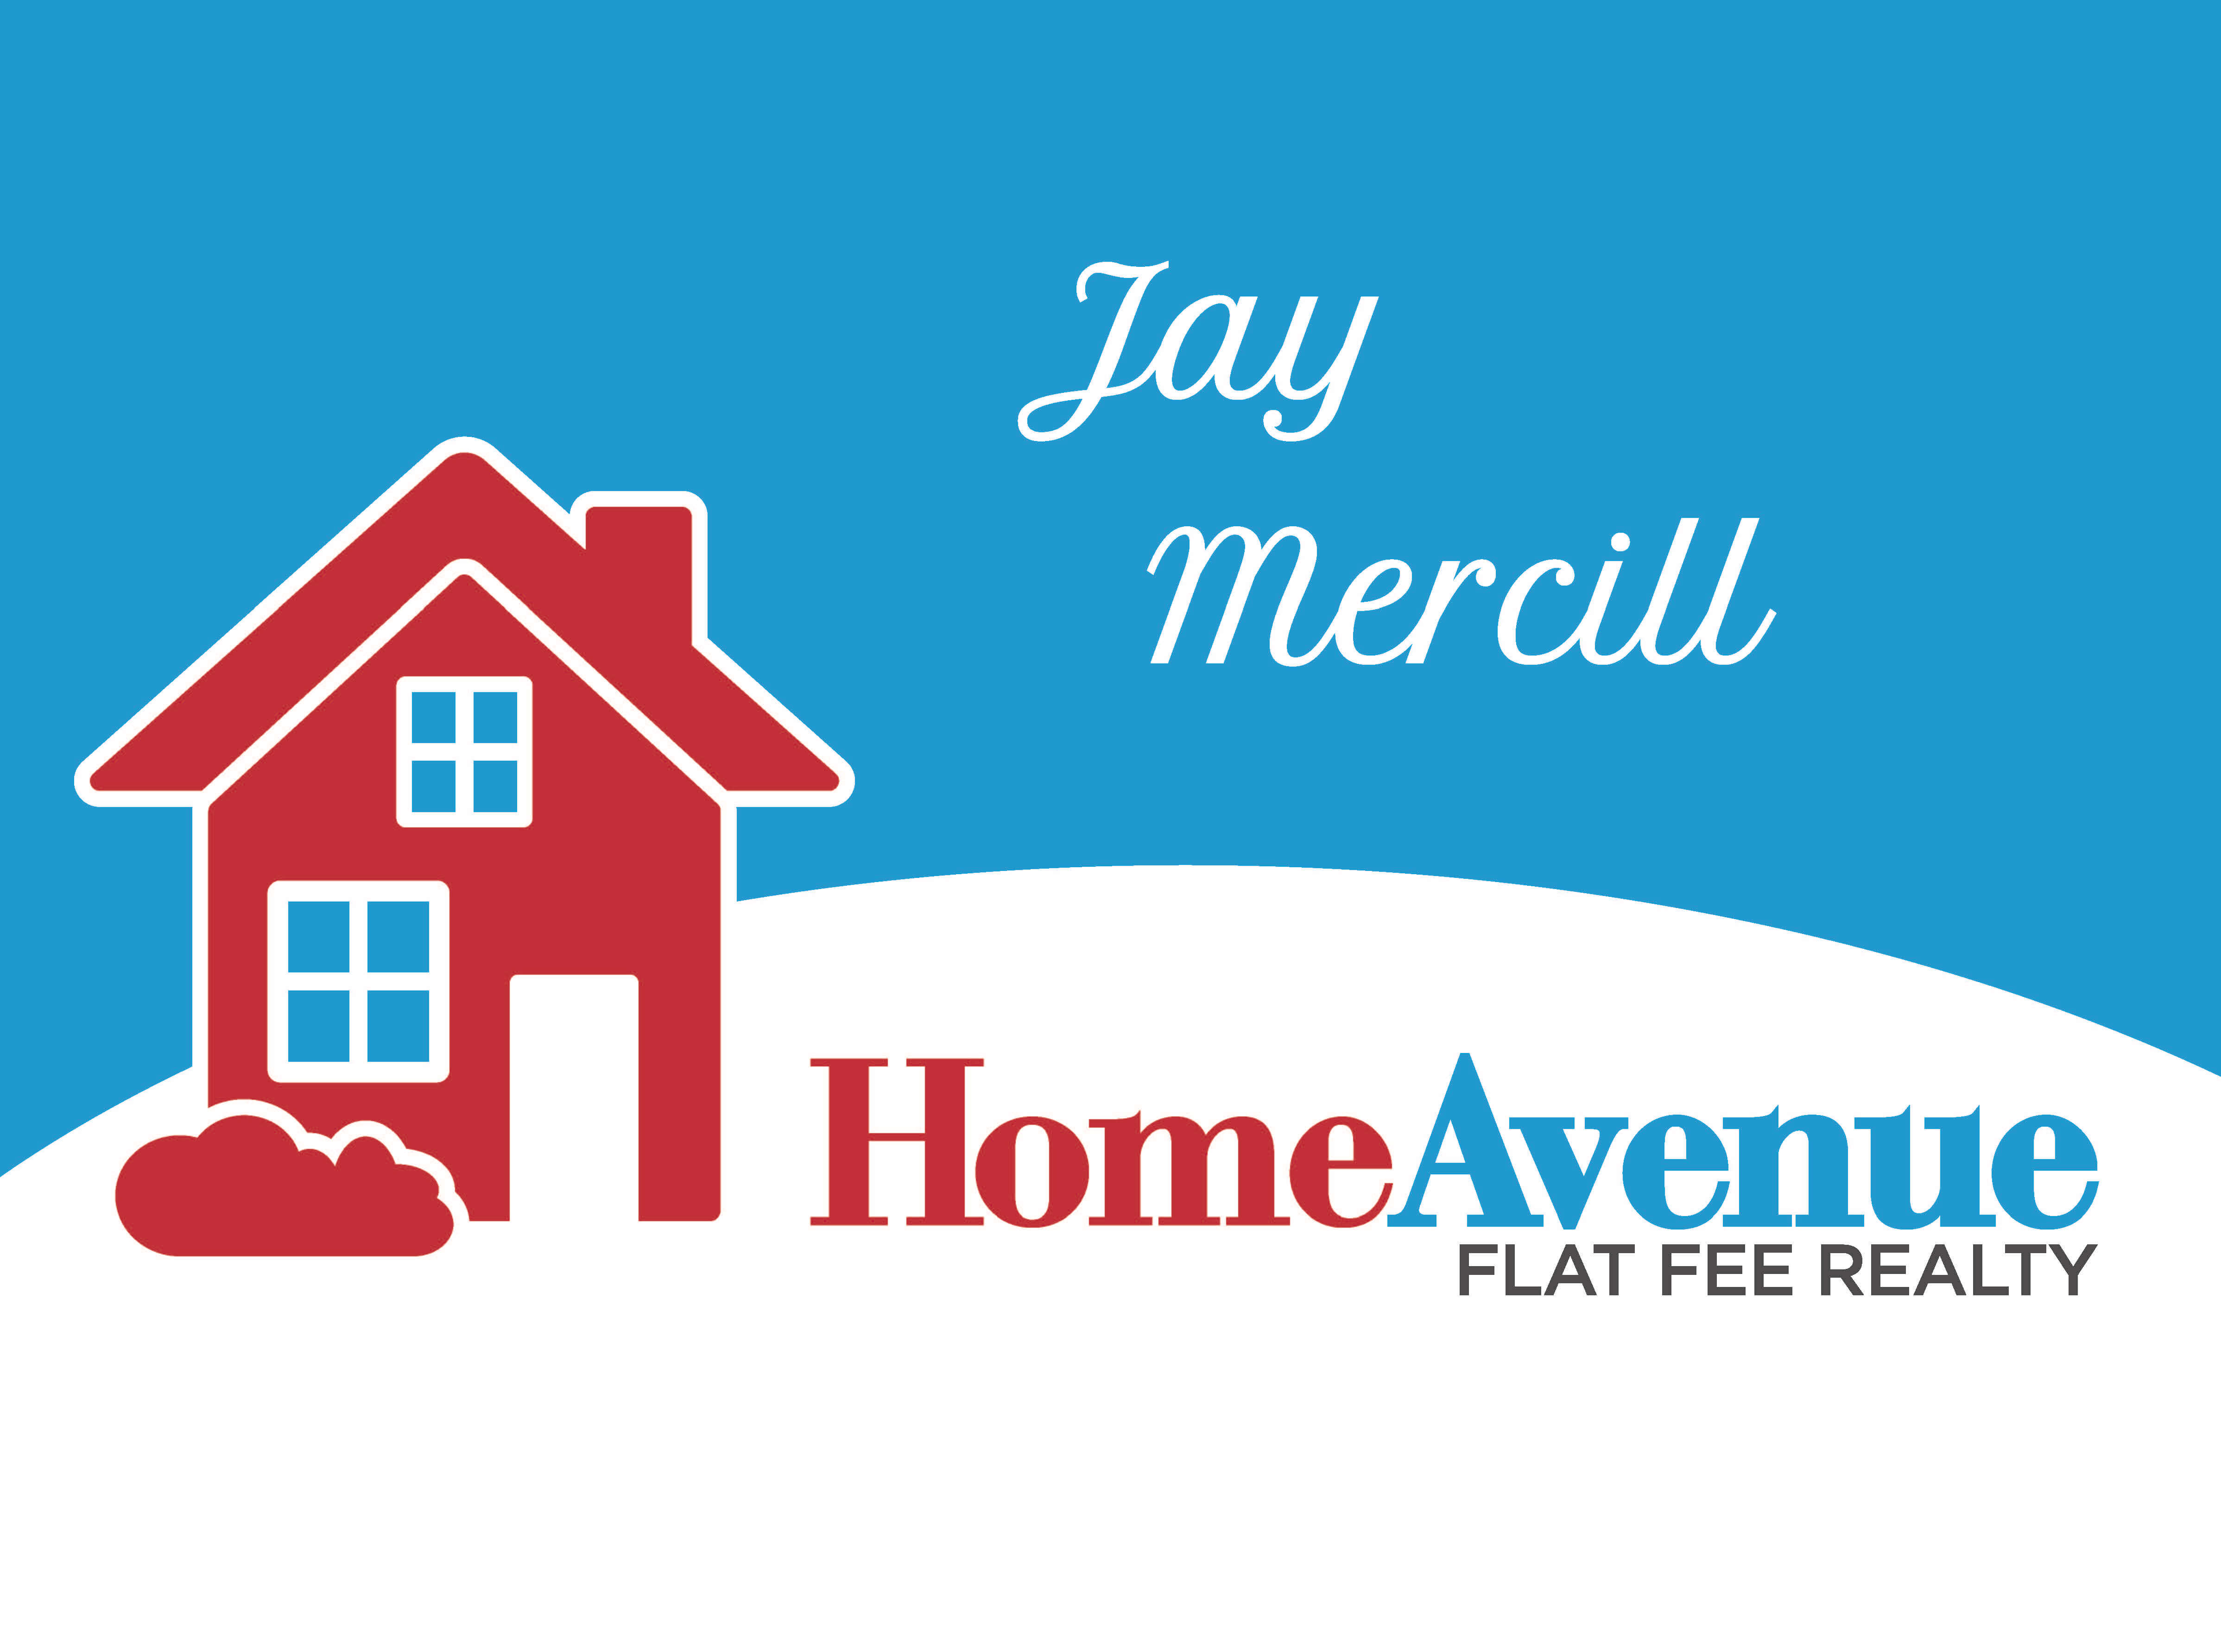 home-avenue-flat-fee-realty-jay-mercill